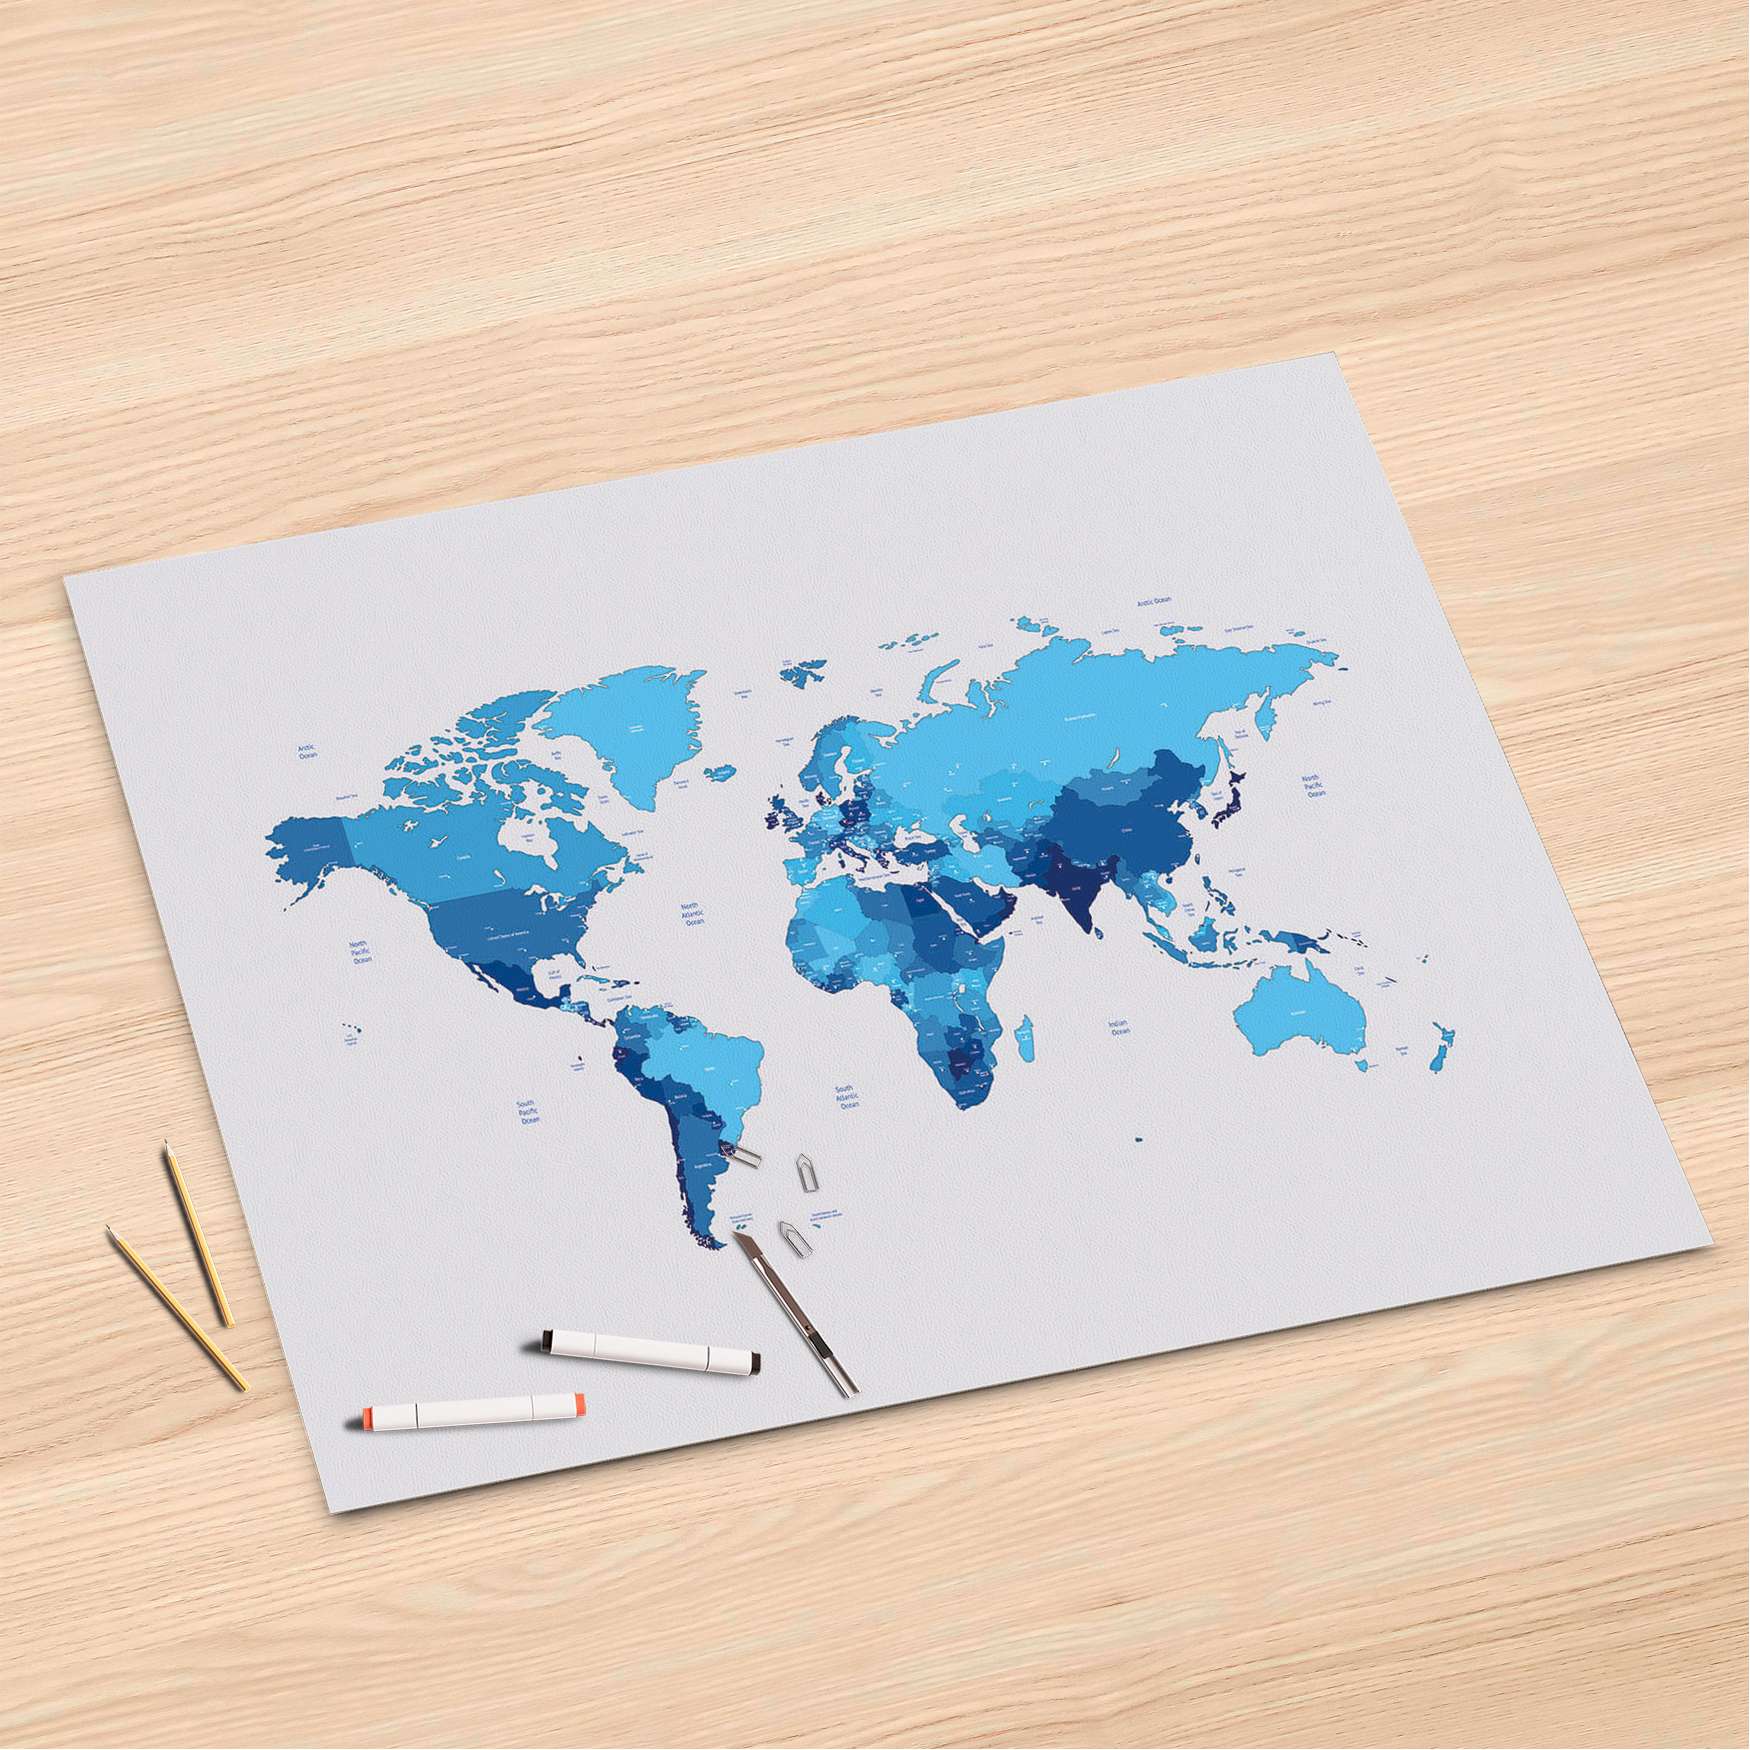 Folienbogen (120x80 cm) - Design: Politische Weltkarte von creatisto